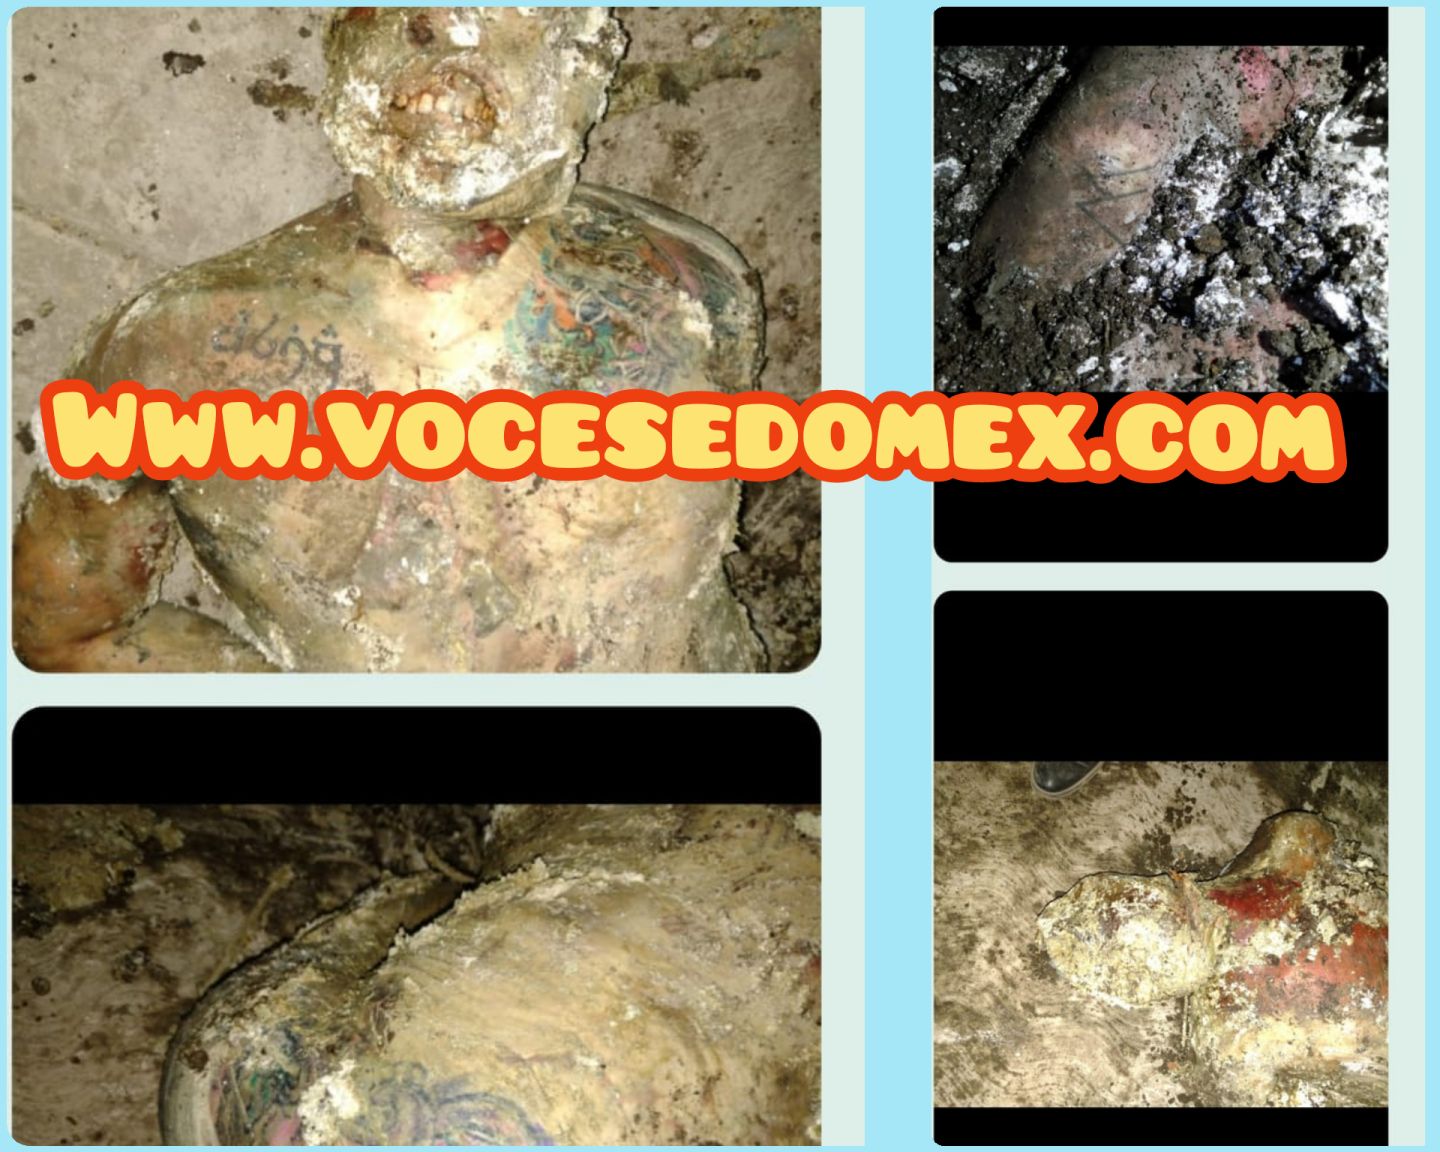 La FGJEM encuentran cadáveres en fosa ubicada en un inmueble de Valle de Chalco 